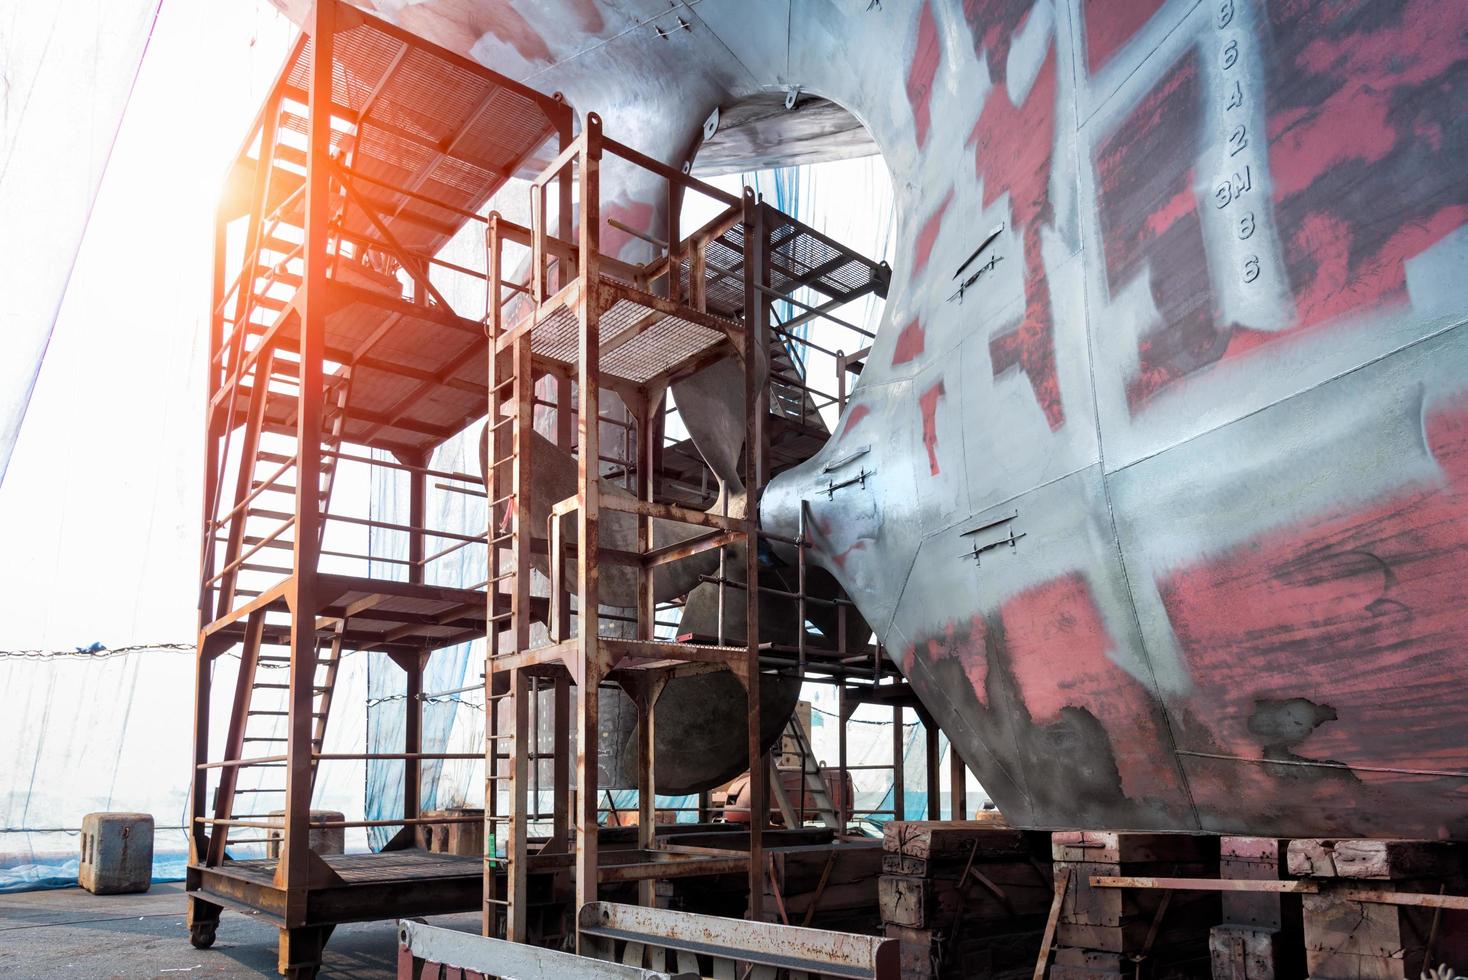 hélice fechada de grande navio em doca seca para reparos e pintura em estaleiro foto